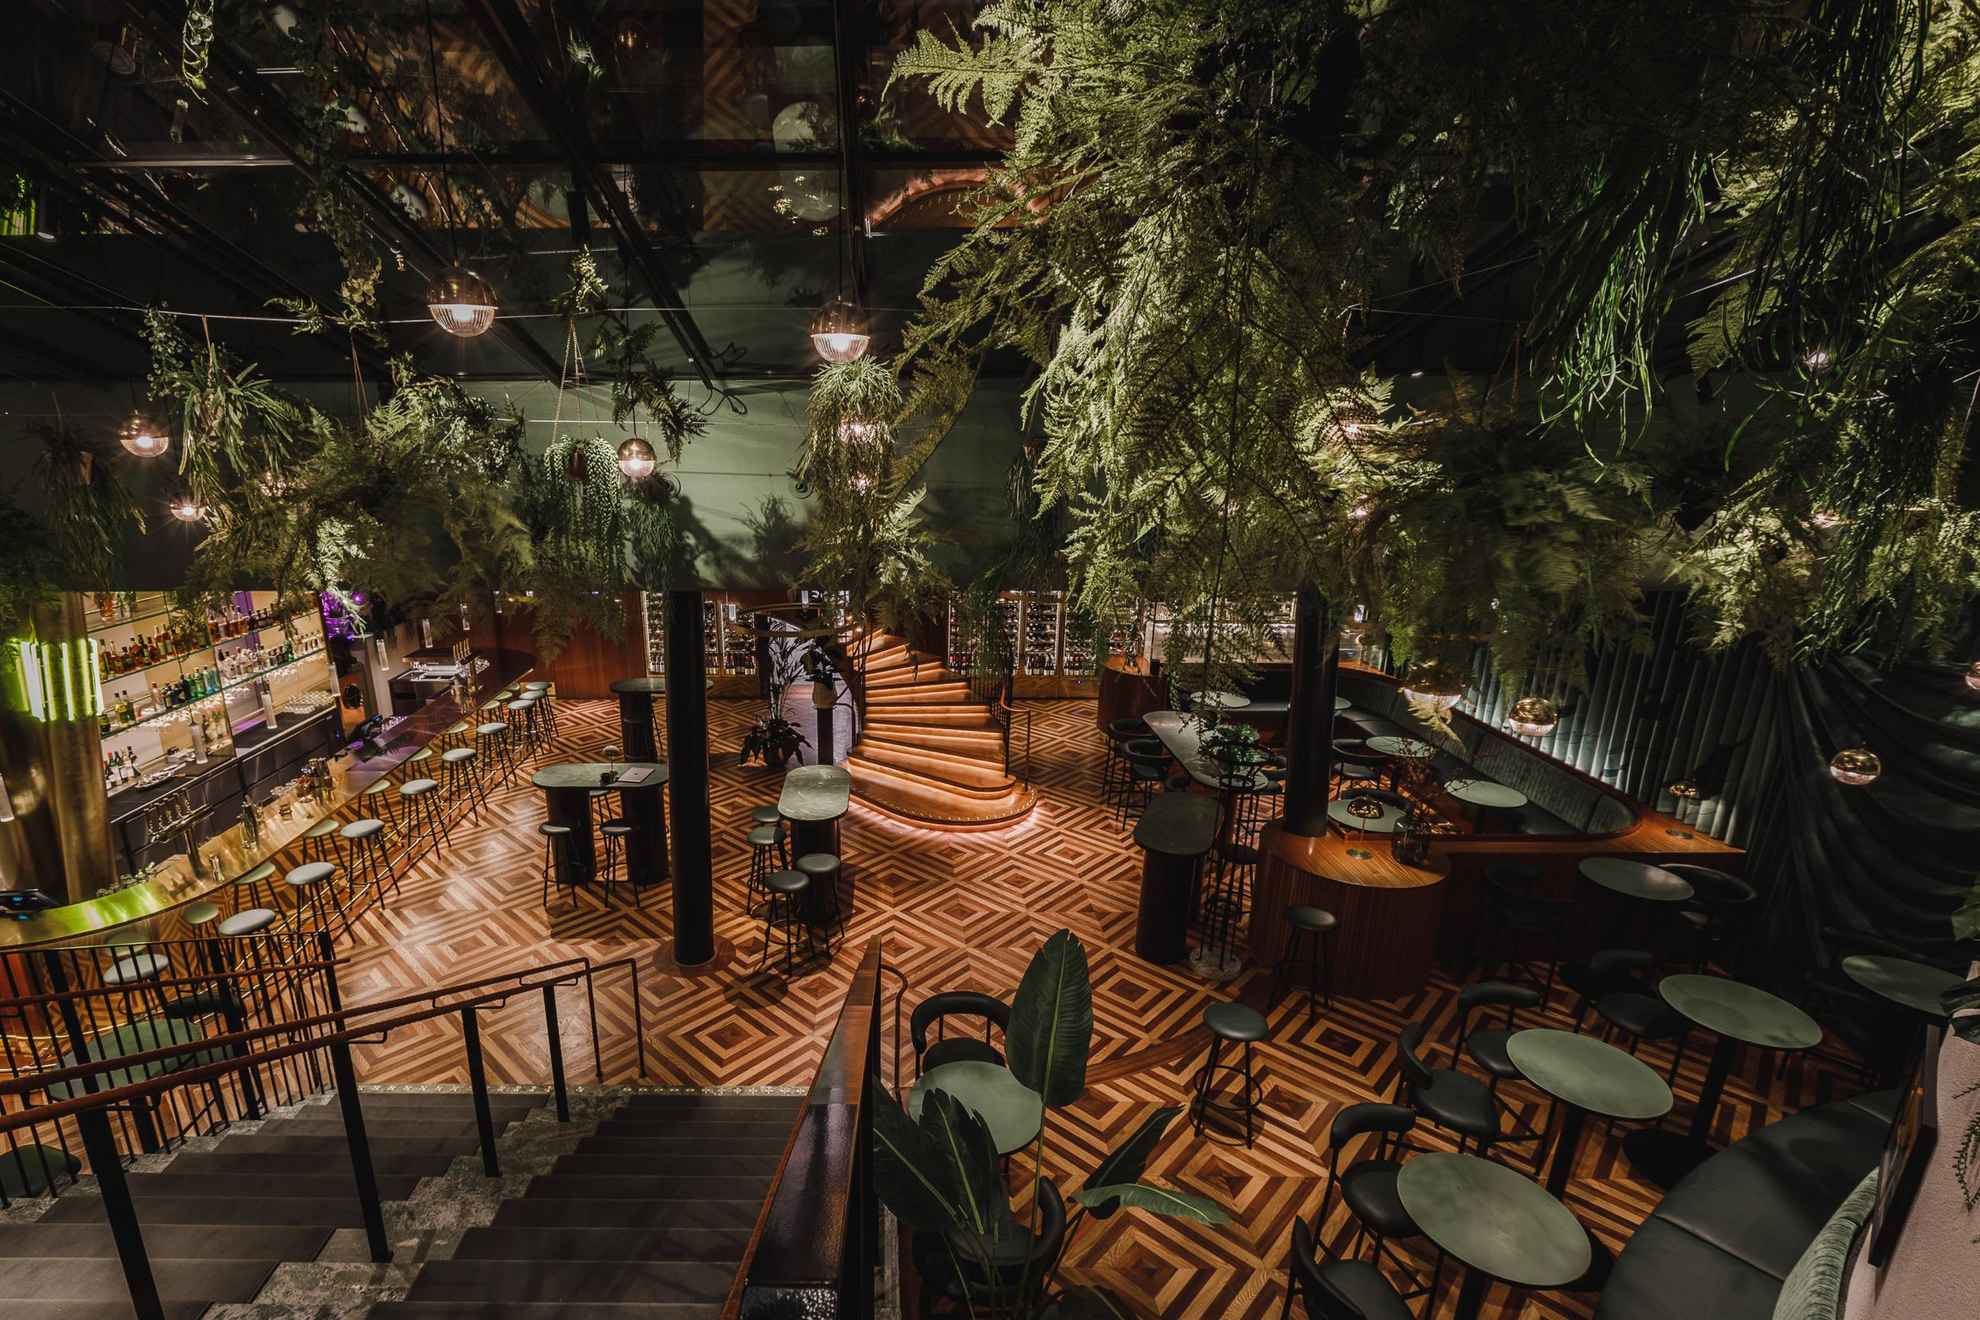 Das Restaurant Brasserie Astoria mit seinen grünen Tischen und Stühlen, der großen Bar und zahlreichen Pflanzen.